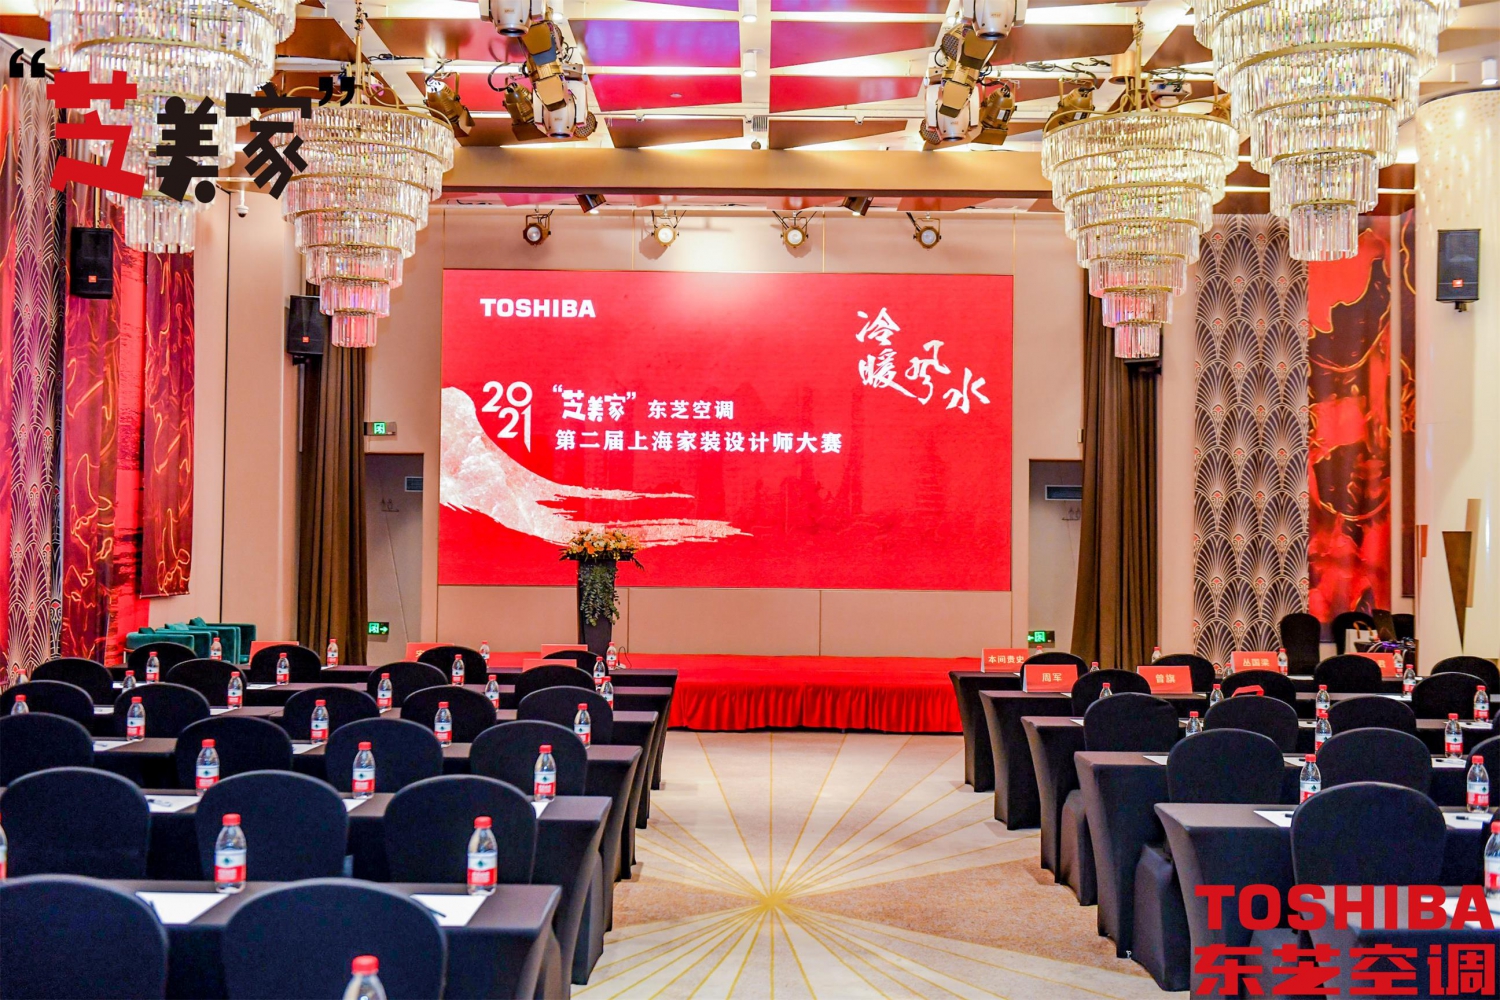 再启航东芝空调“芝美家”第二届上海家装设计师大赛颁奖典礼召开